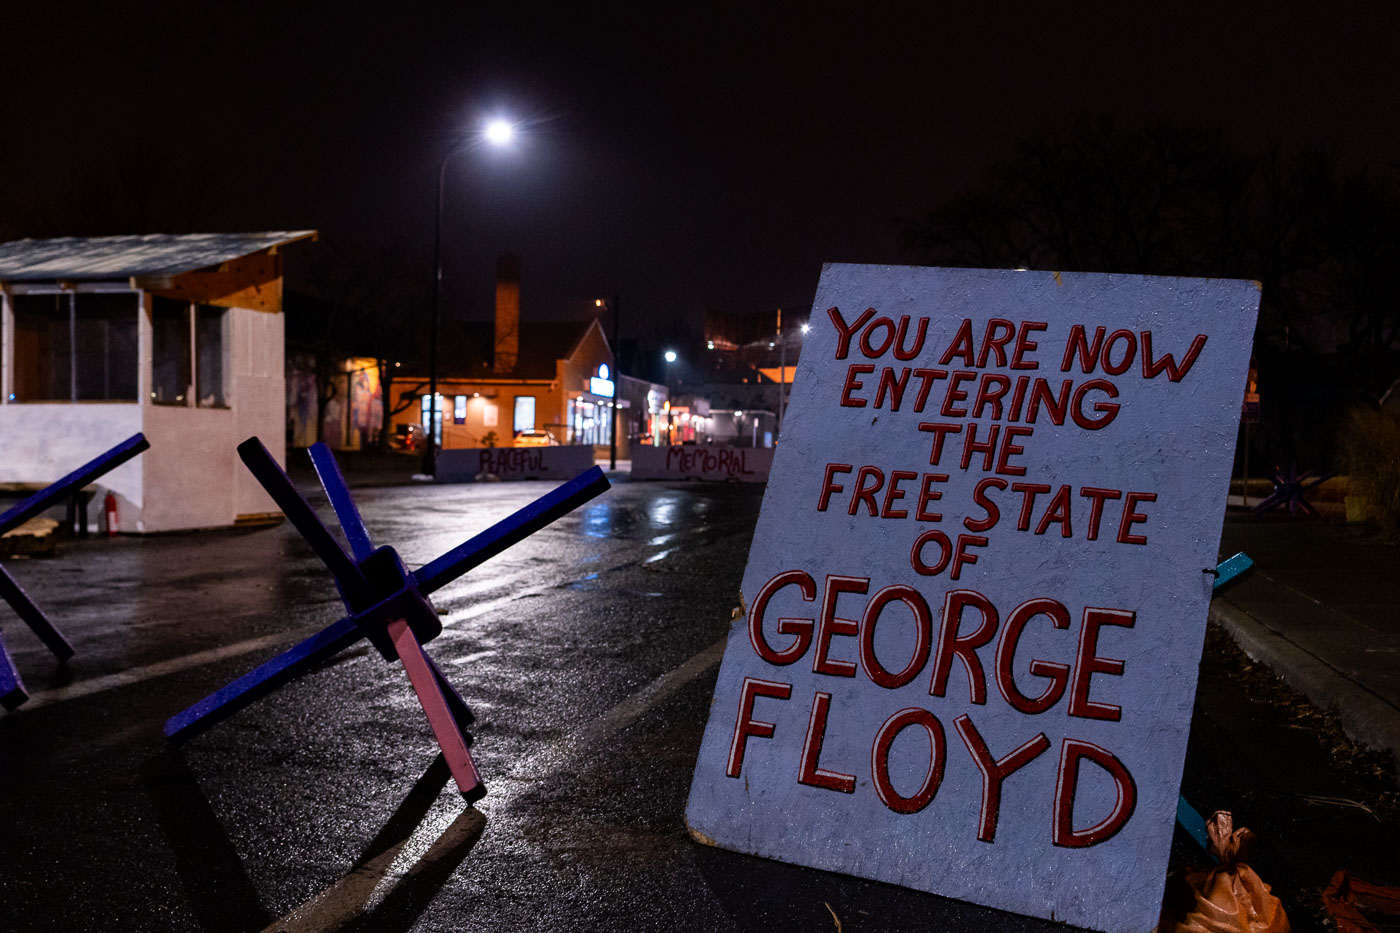 Free state of George Floyd